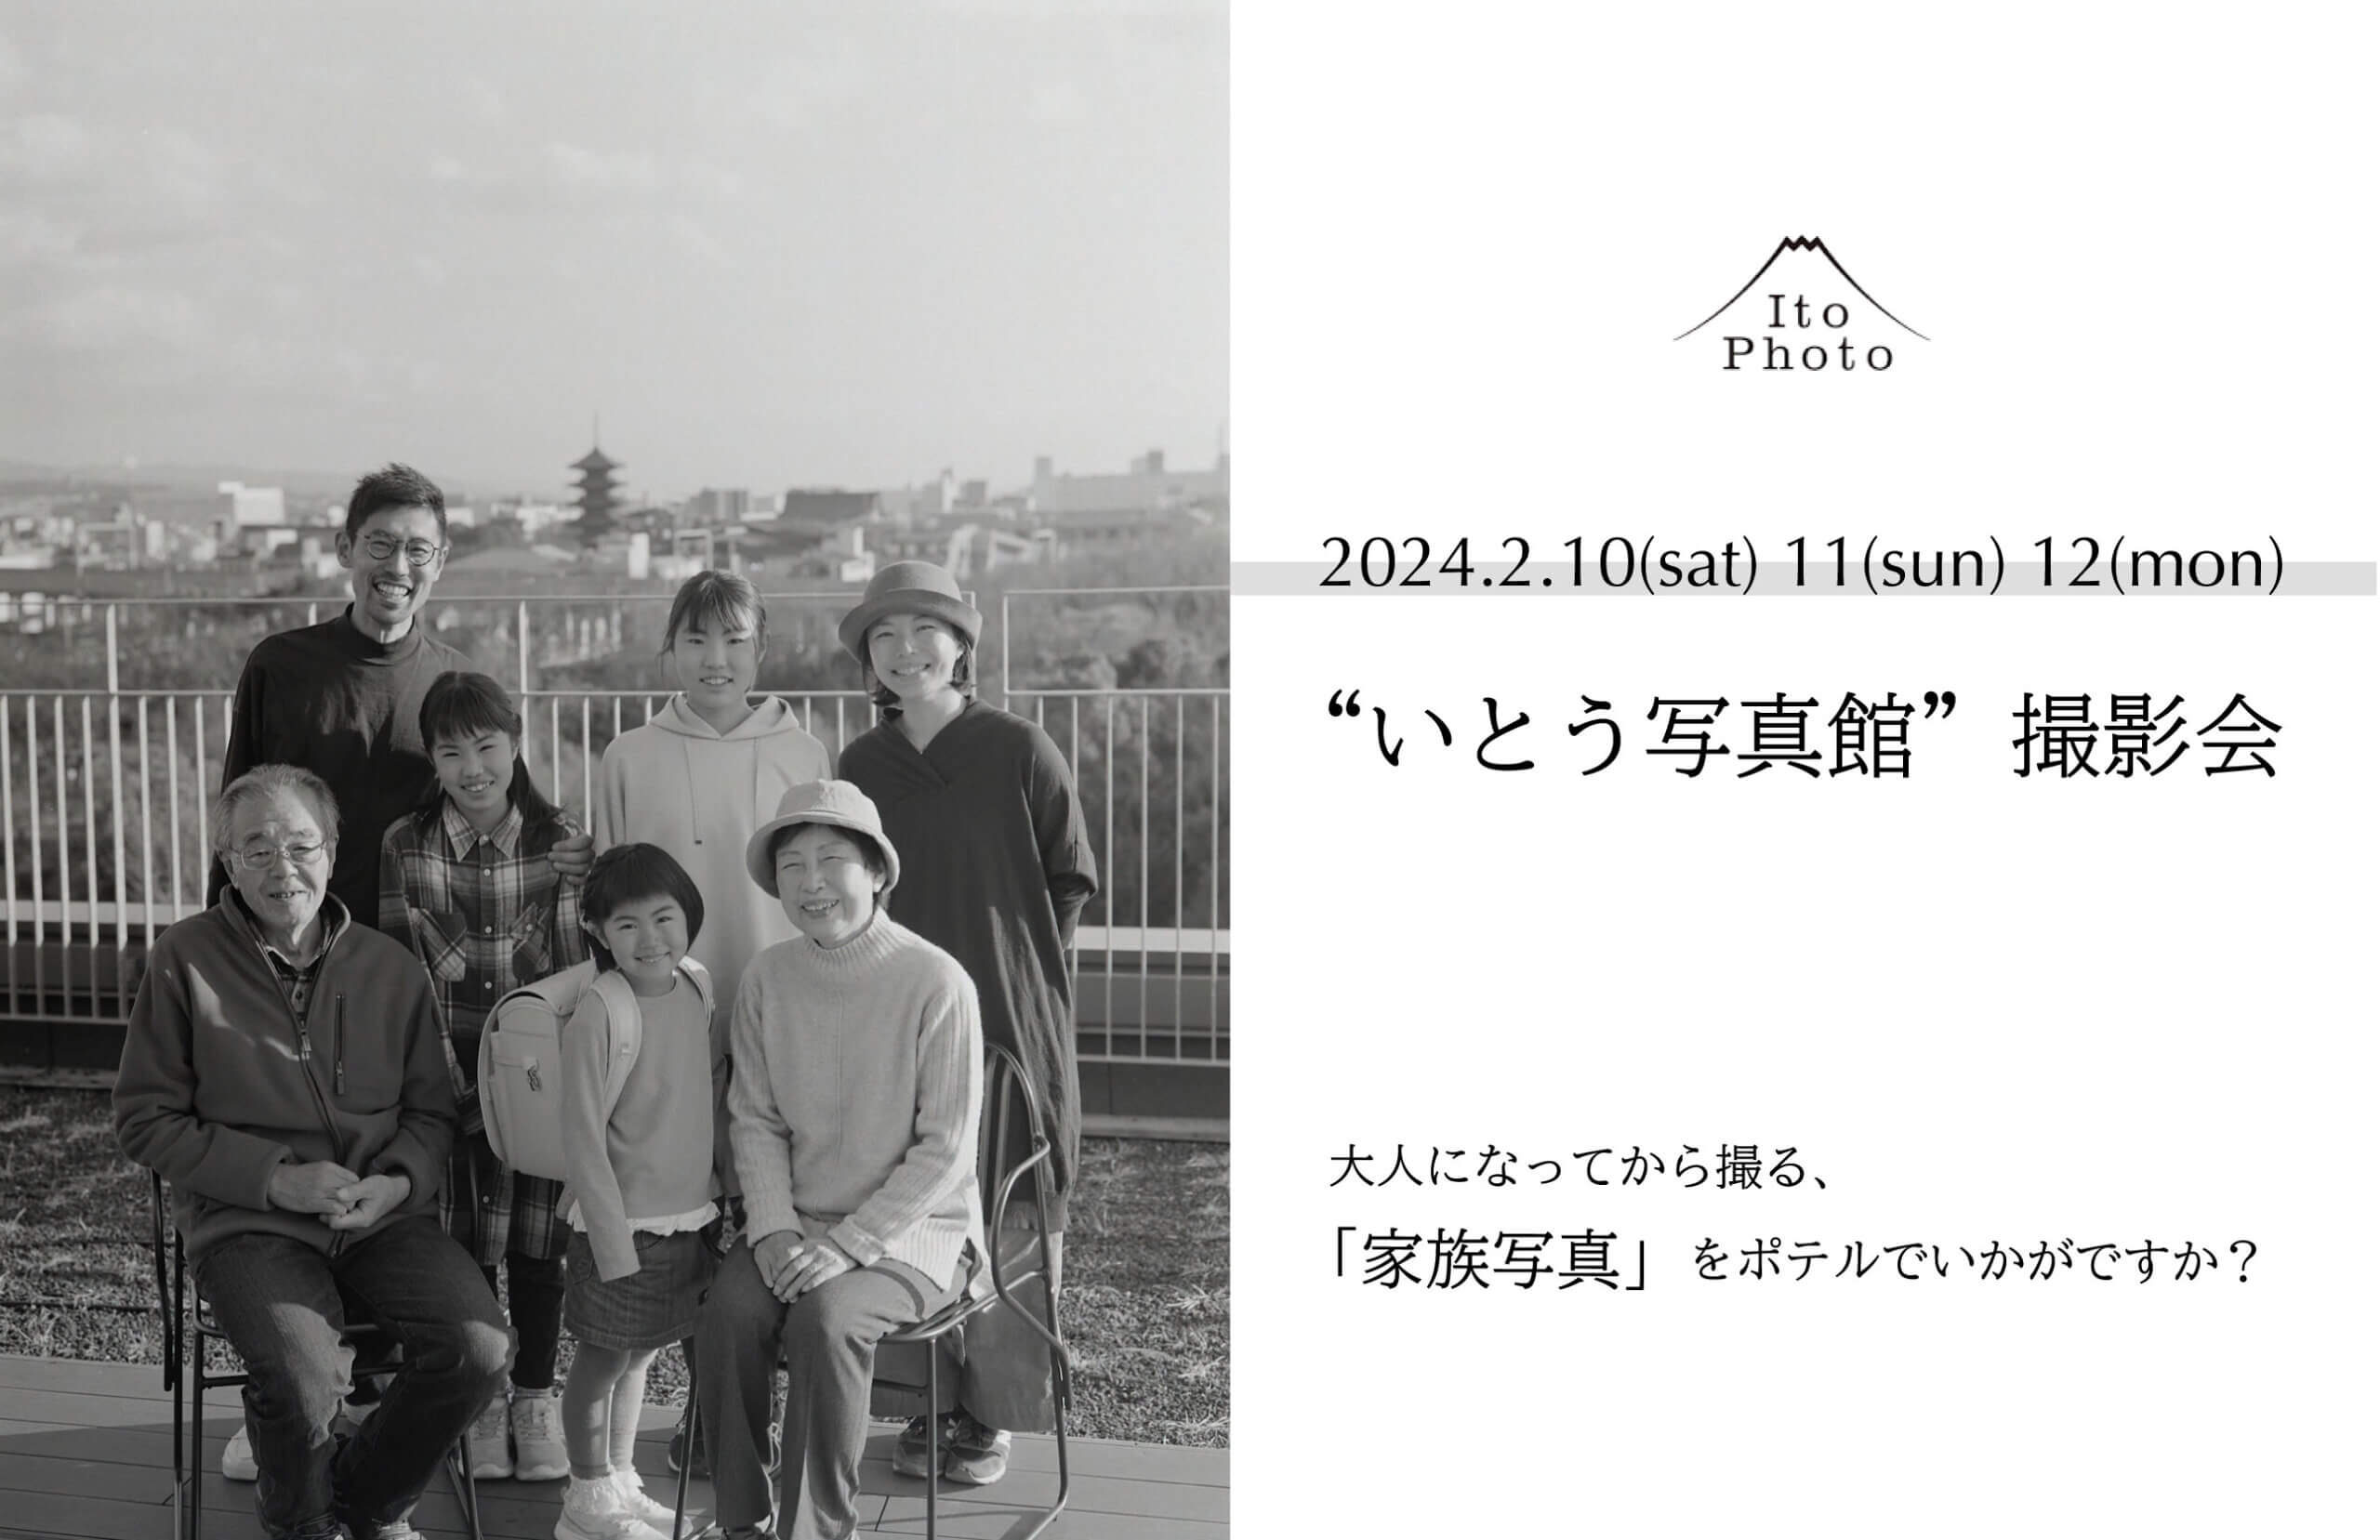 梅小路ポテル京都で開催するいとう写真館撮影会のバナー画像